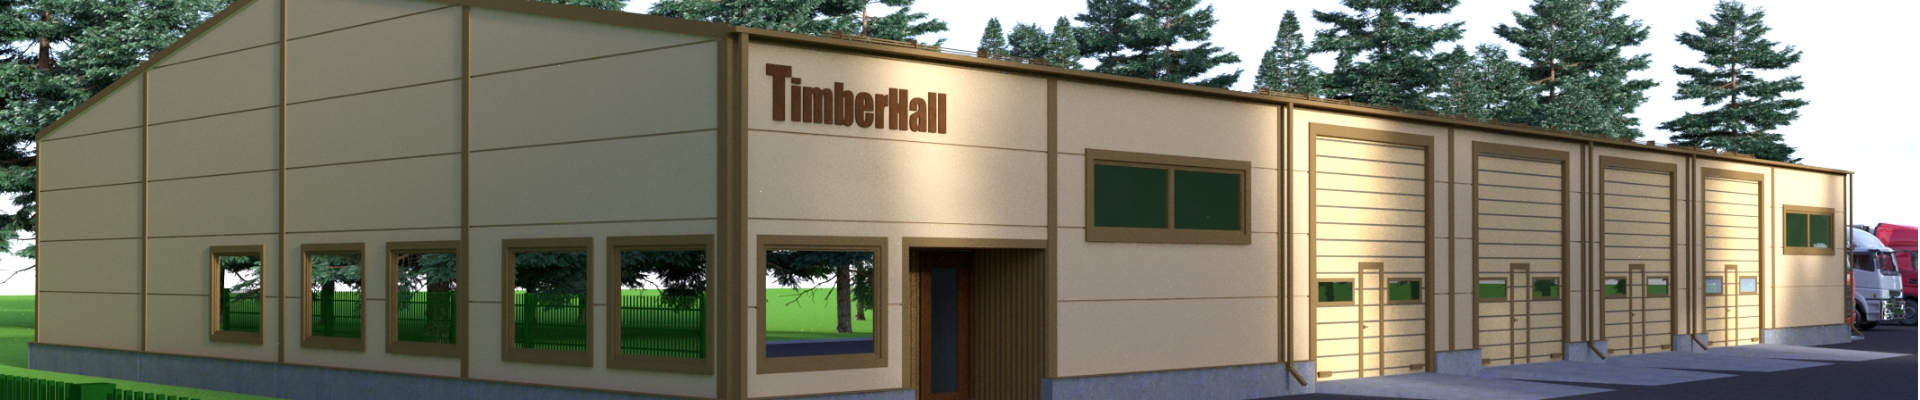 Suurim mainega ettevõte TIMBERHALL OÜ, maineskoor 2640, aktiivseid äriseoseid 3. Tegutseb peamiselt valdkonnas: Hoonete ehitustööd.